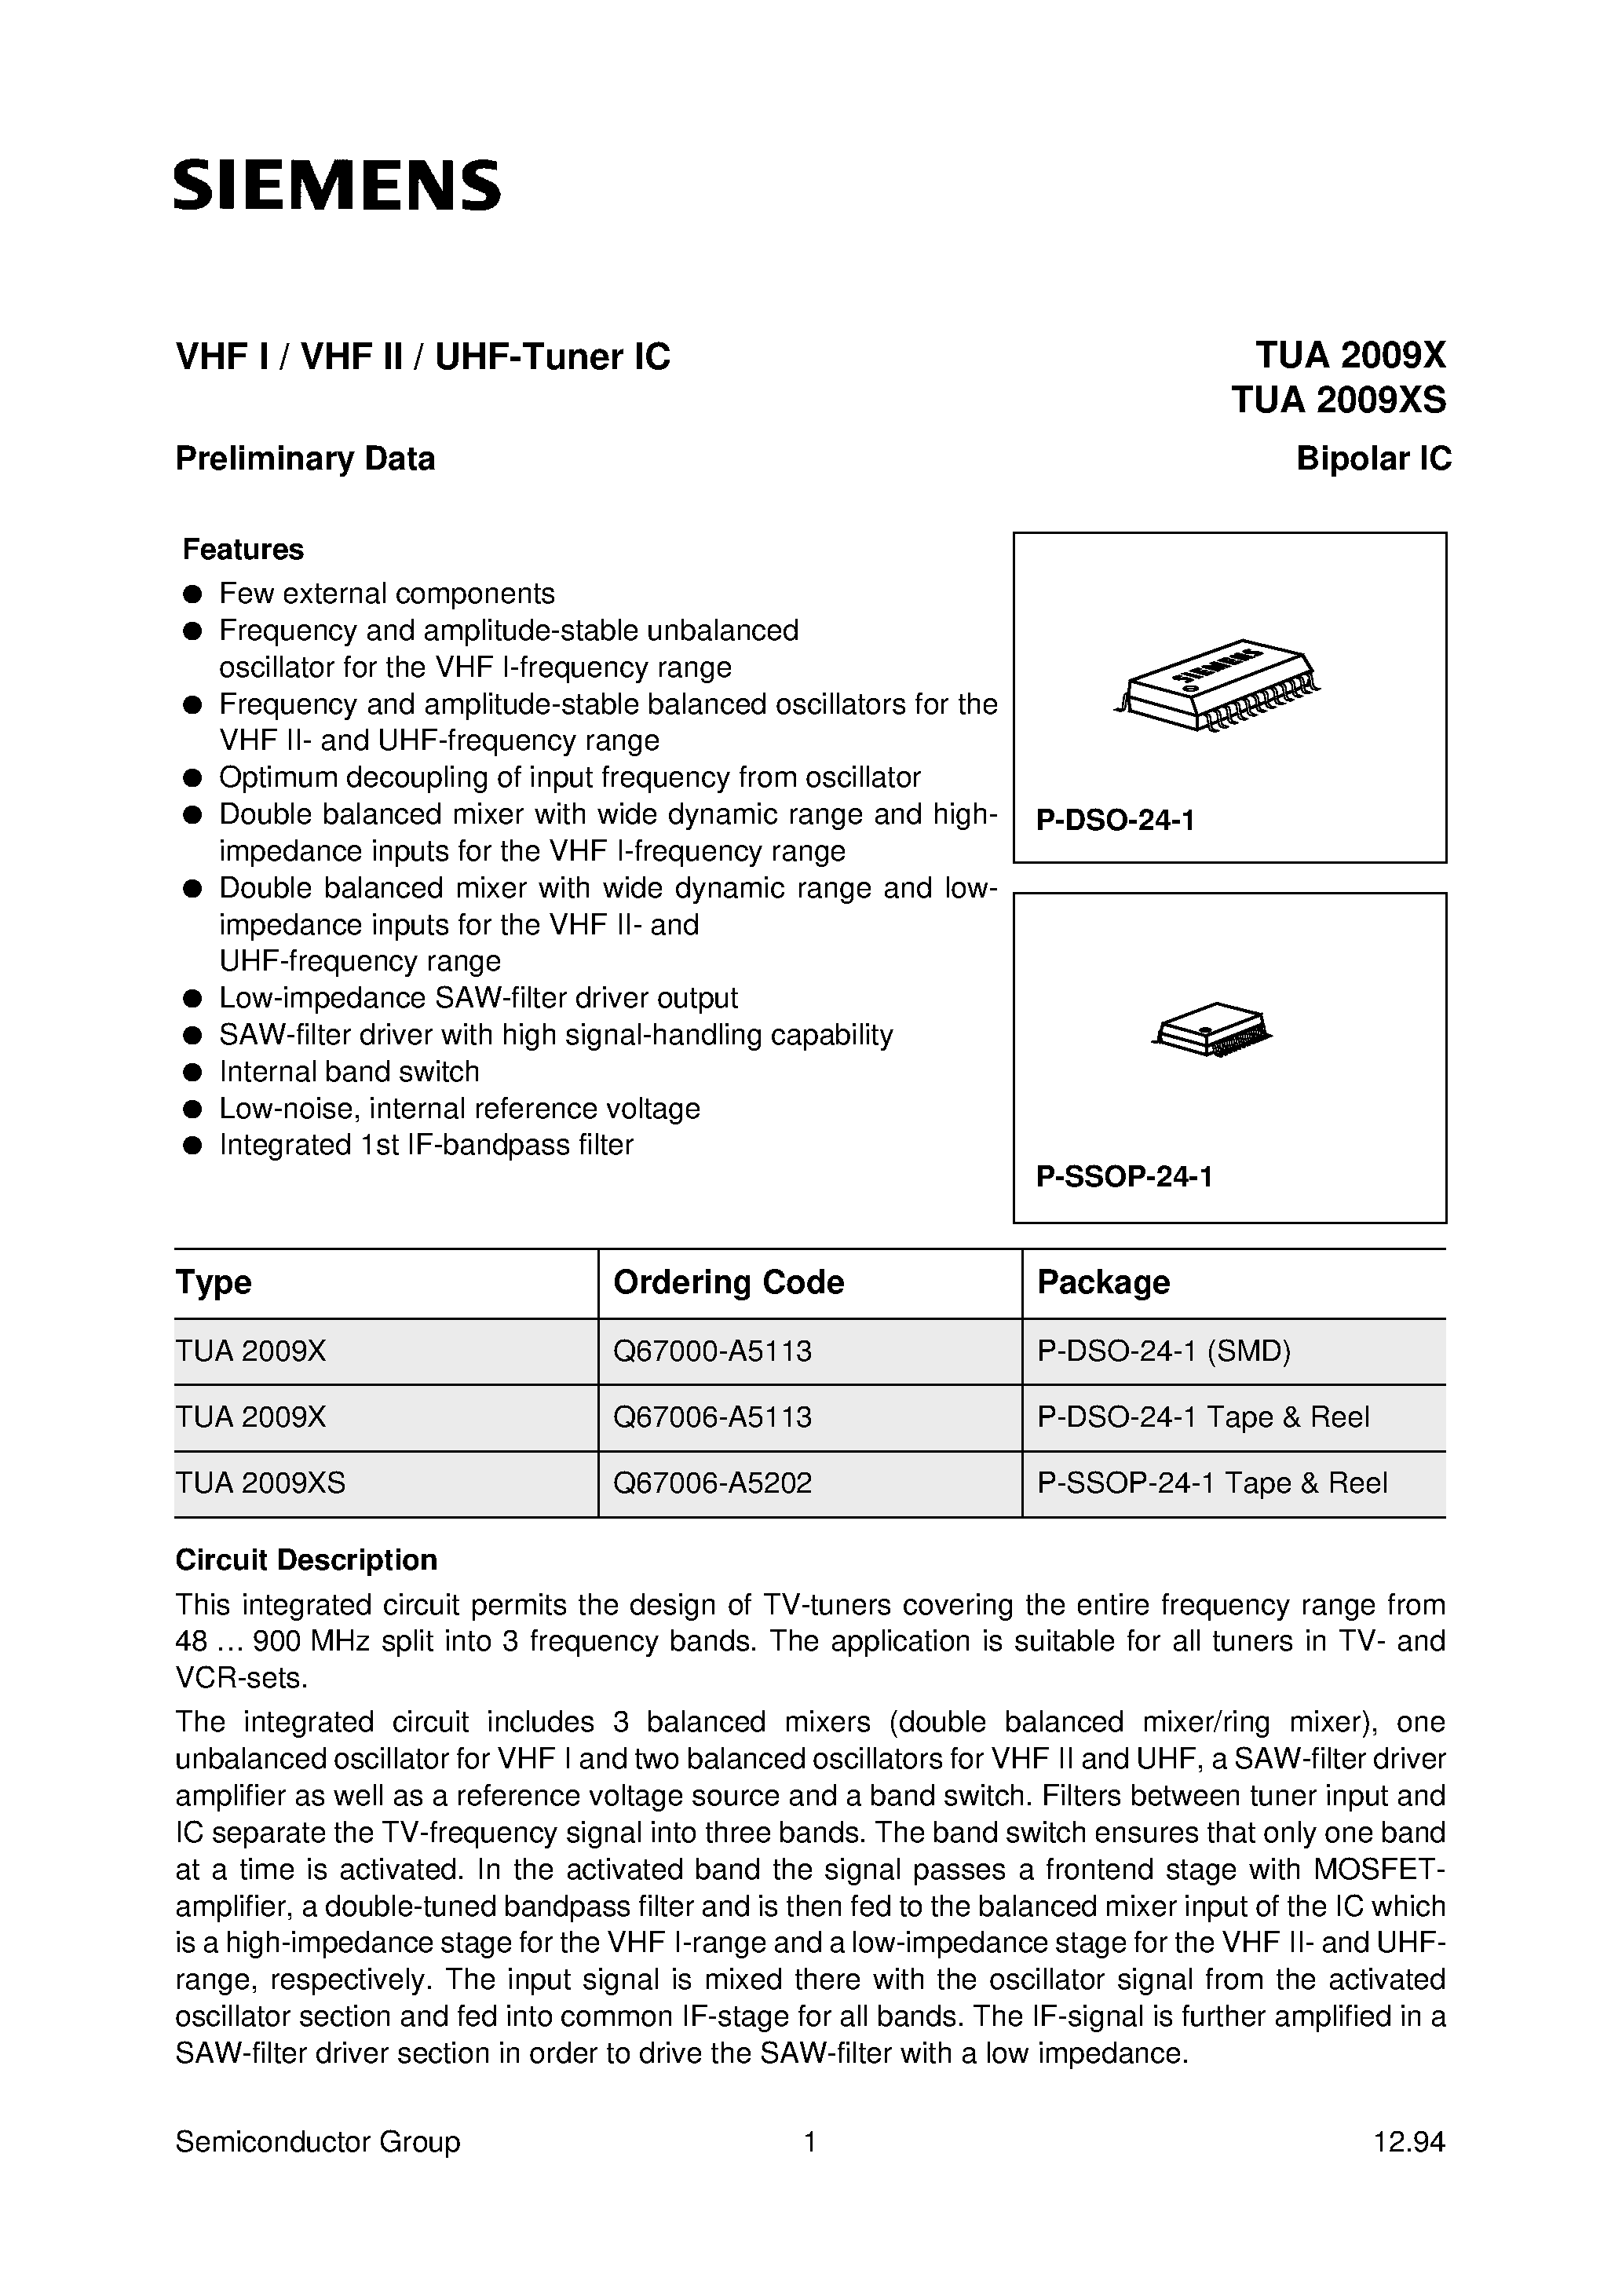 Даташит TUA2009XS - VHF I / VHF II / UHF-Tuner IC страница 1